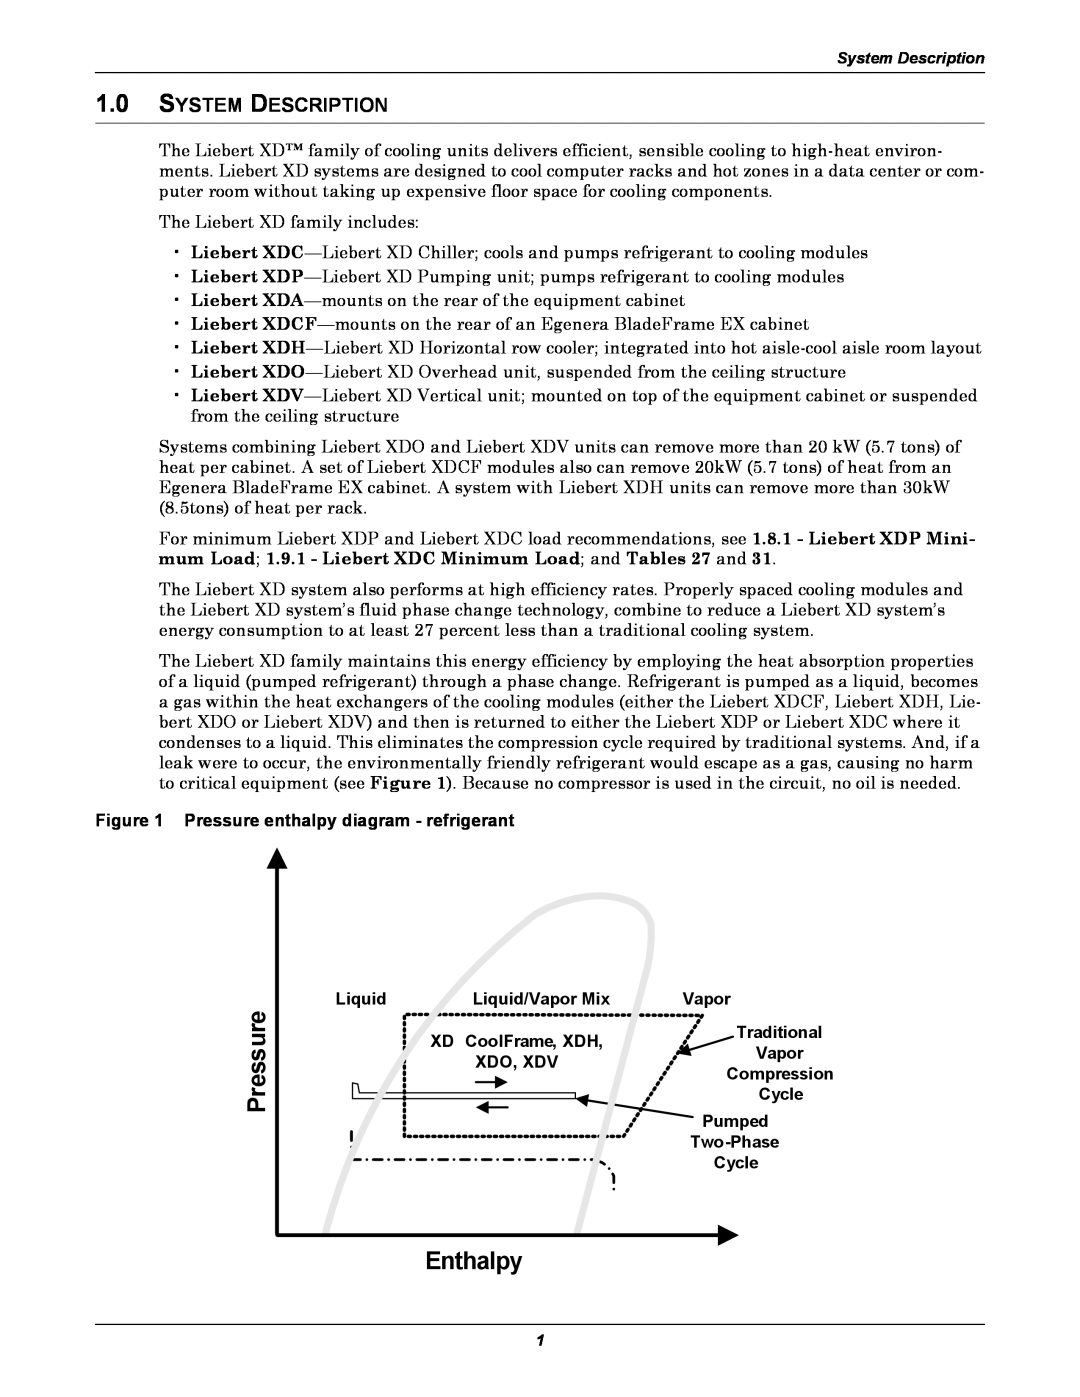 Emerson Xtreme Density Enthalpy, System Description, Pressure enthalpy diagram - refrigerant, Liquid/Vapor Mix 